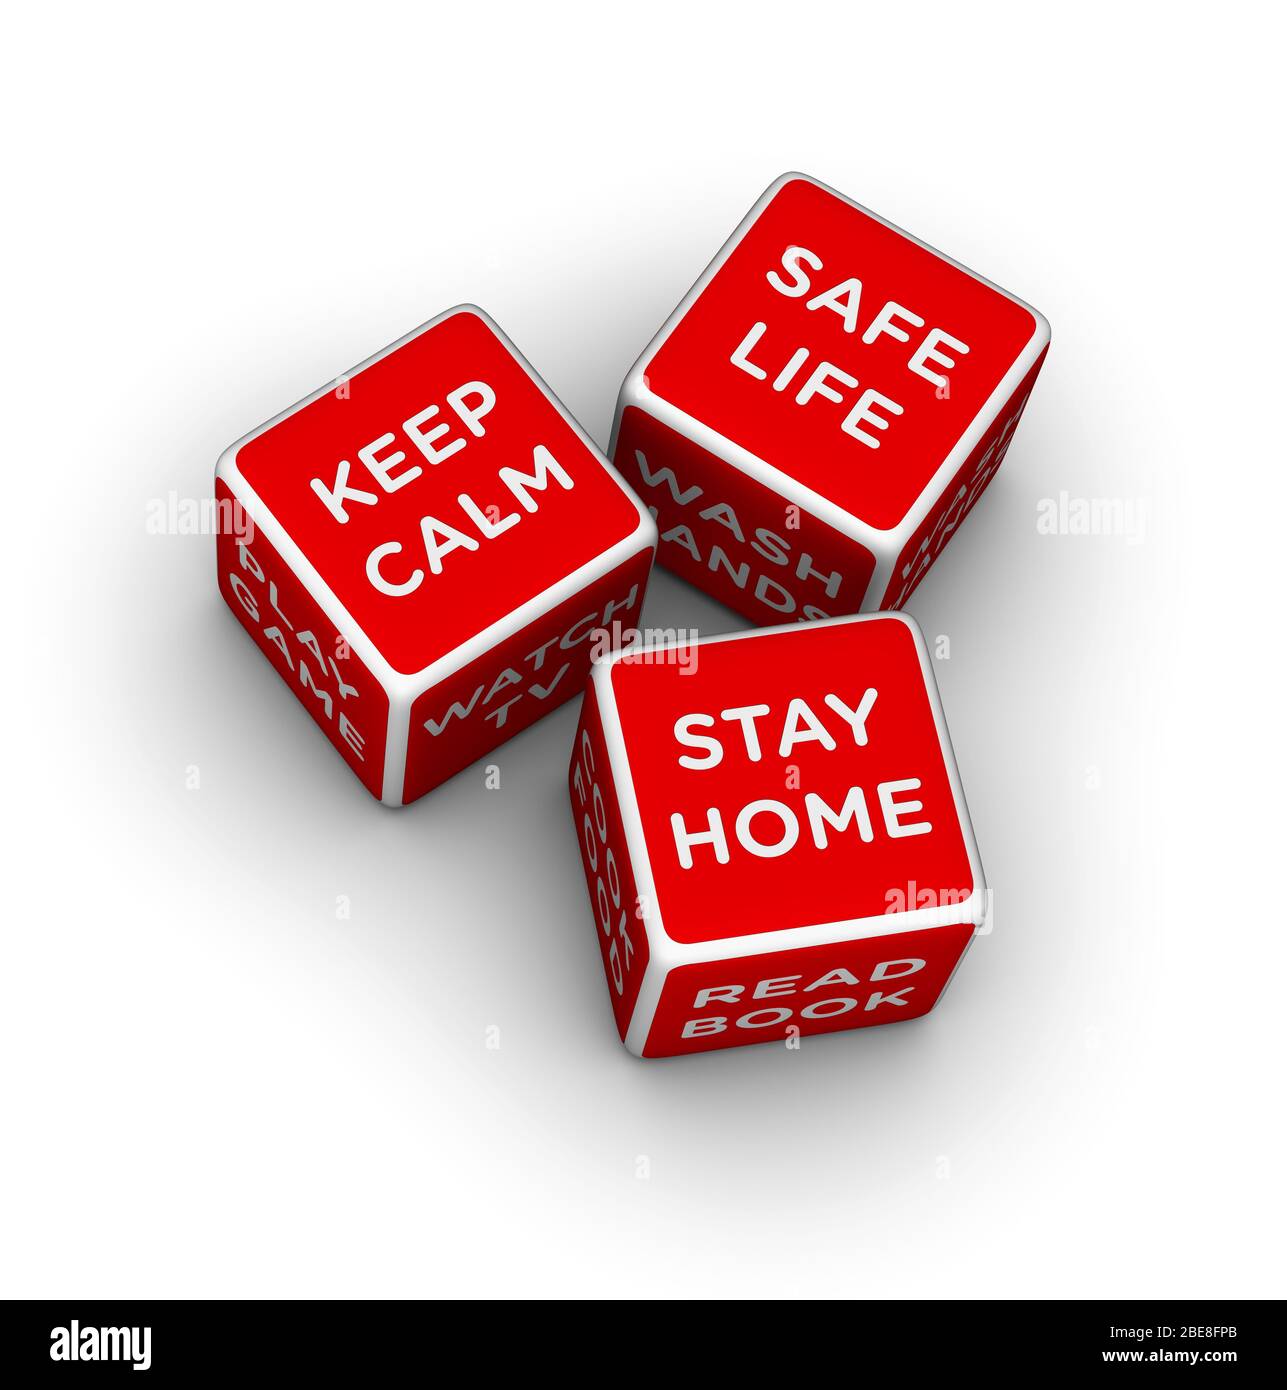 Dice con señales de permanecer en casa, mantener la calma y la vida segura. Ilustración de cubo rojo 3D sobre fondo blanco. Foto de stock